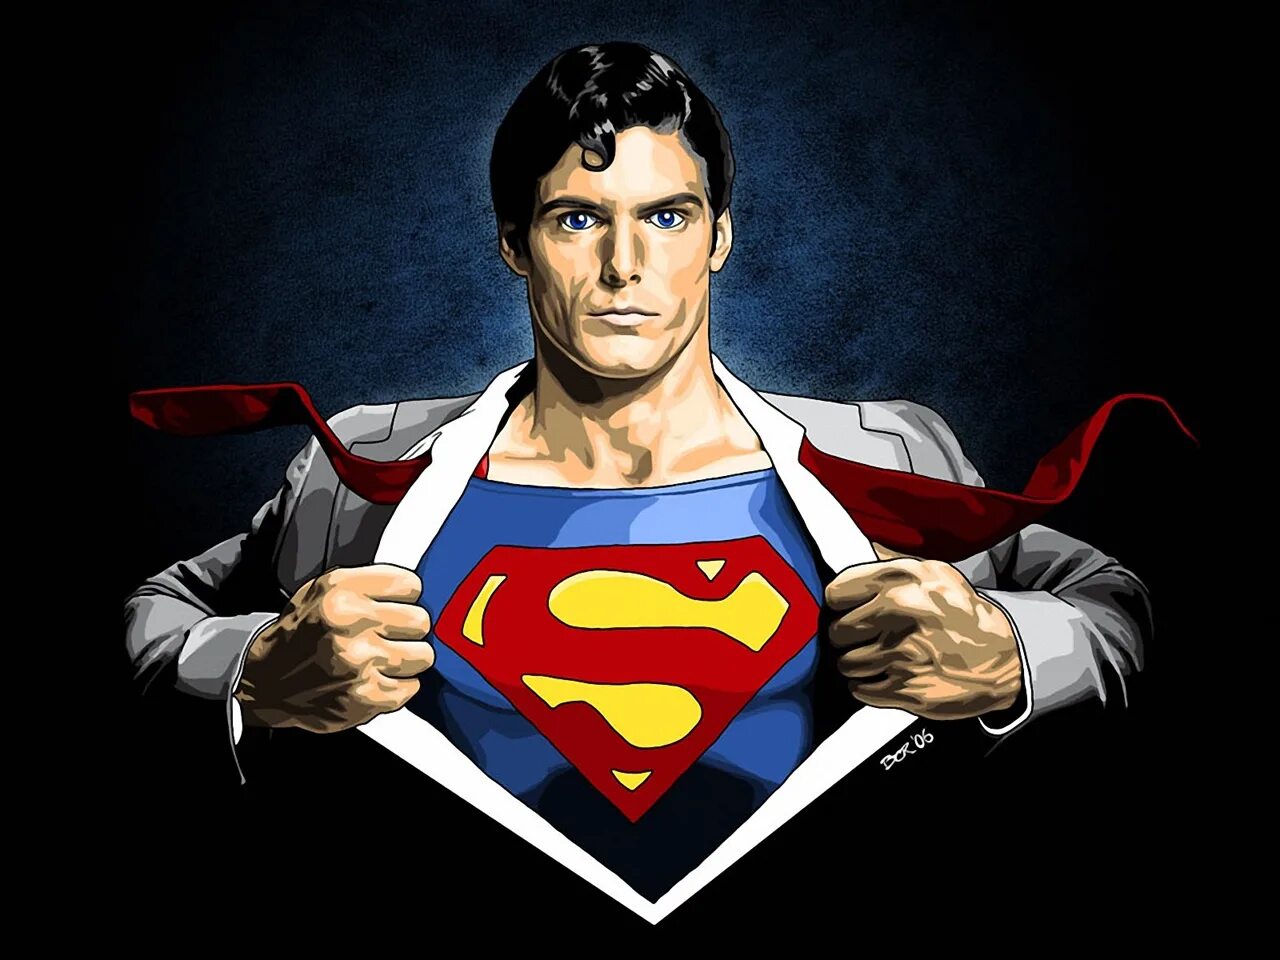 Marvel super man. Кларк Кент Супермен. Супермен Кларк Кент арт. Кларк Кент Супермен комикс. Кларк Кент рисунок.